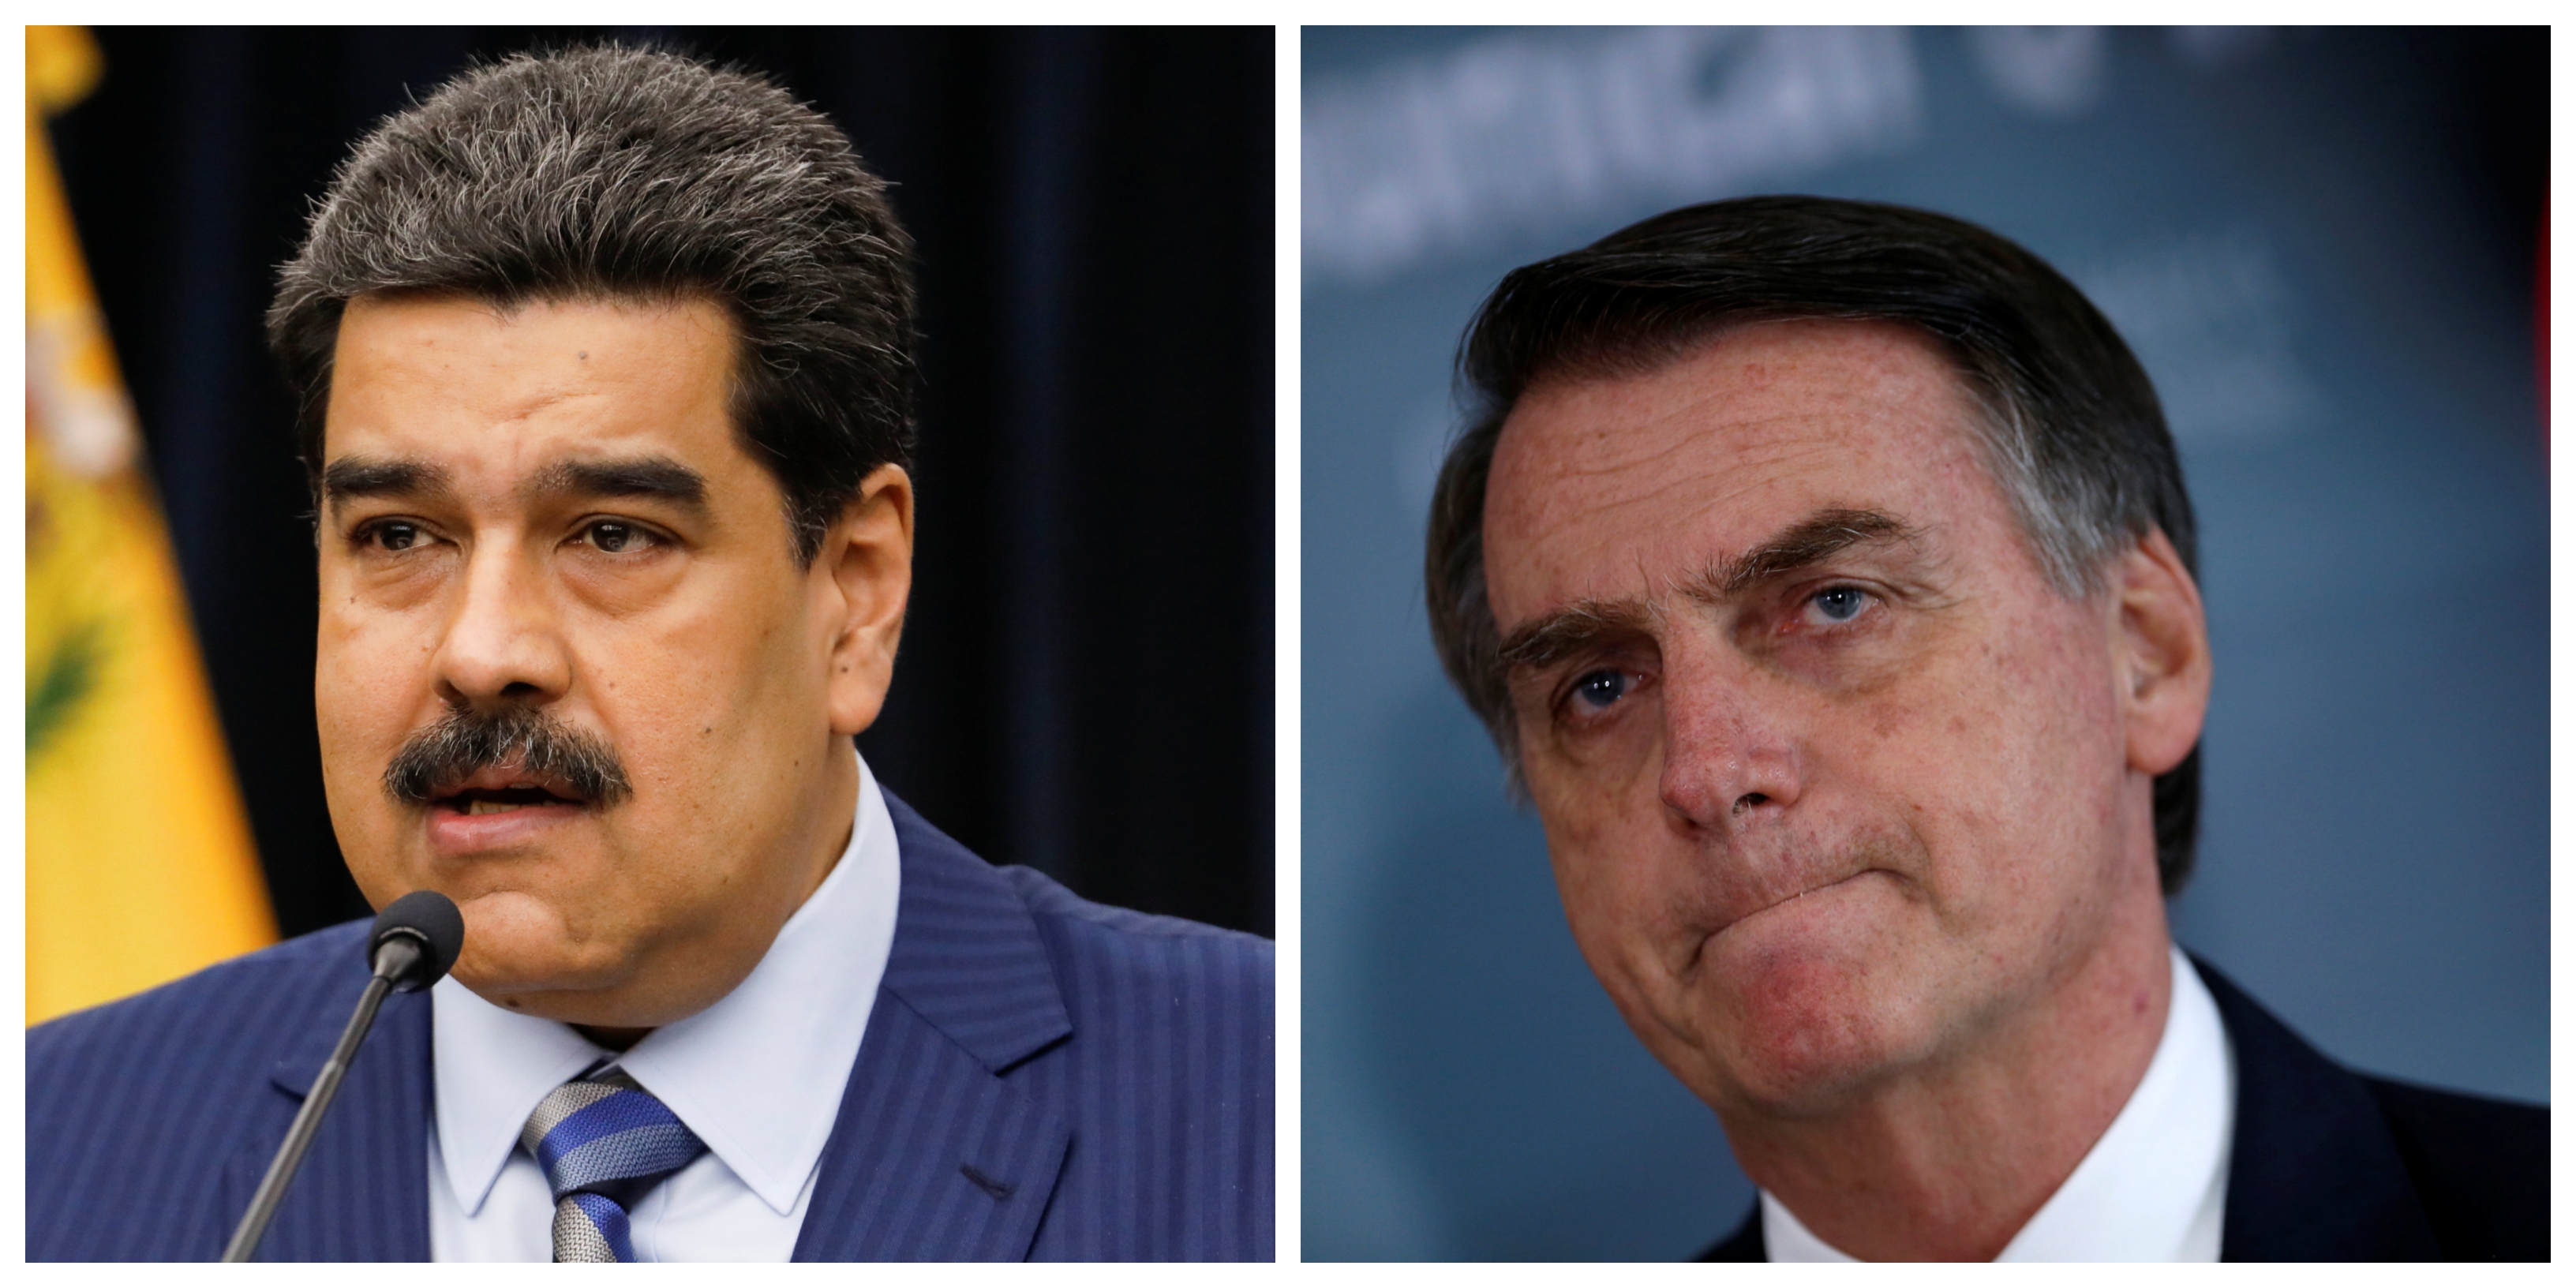 Los documentos publicados por la Cancillería de Venezuela desmienten las palabras del futuro ministro de Relaciones Exteriores de Brasil sobre la ausencia de Nicolás Maduro a la investidura de Bolsonaro.